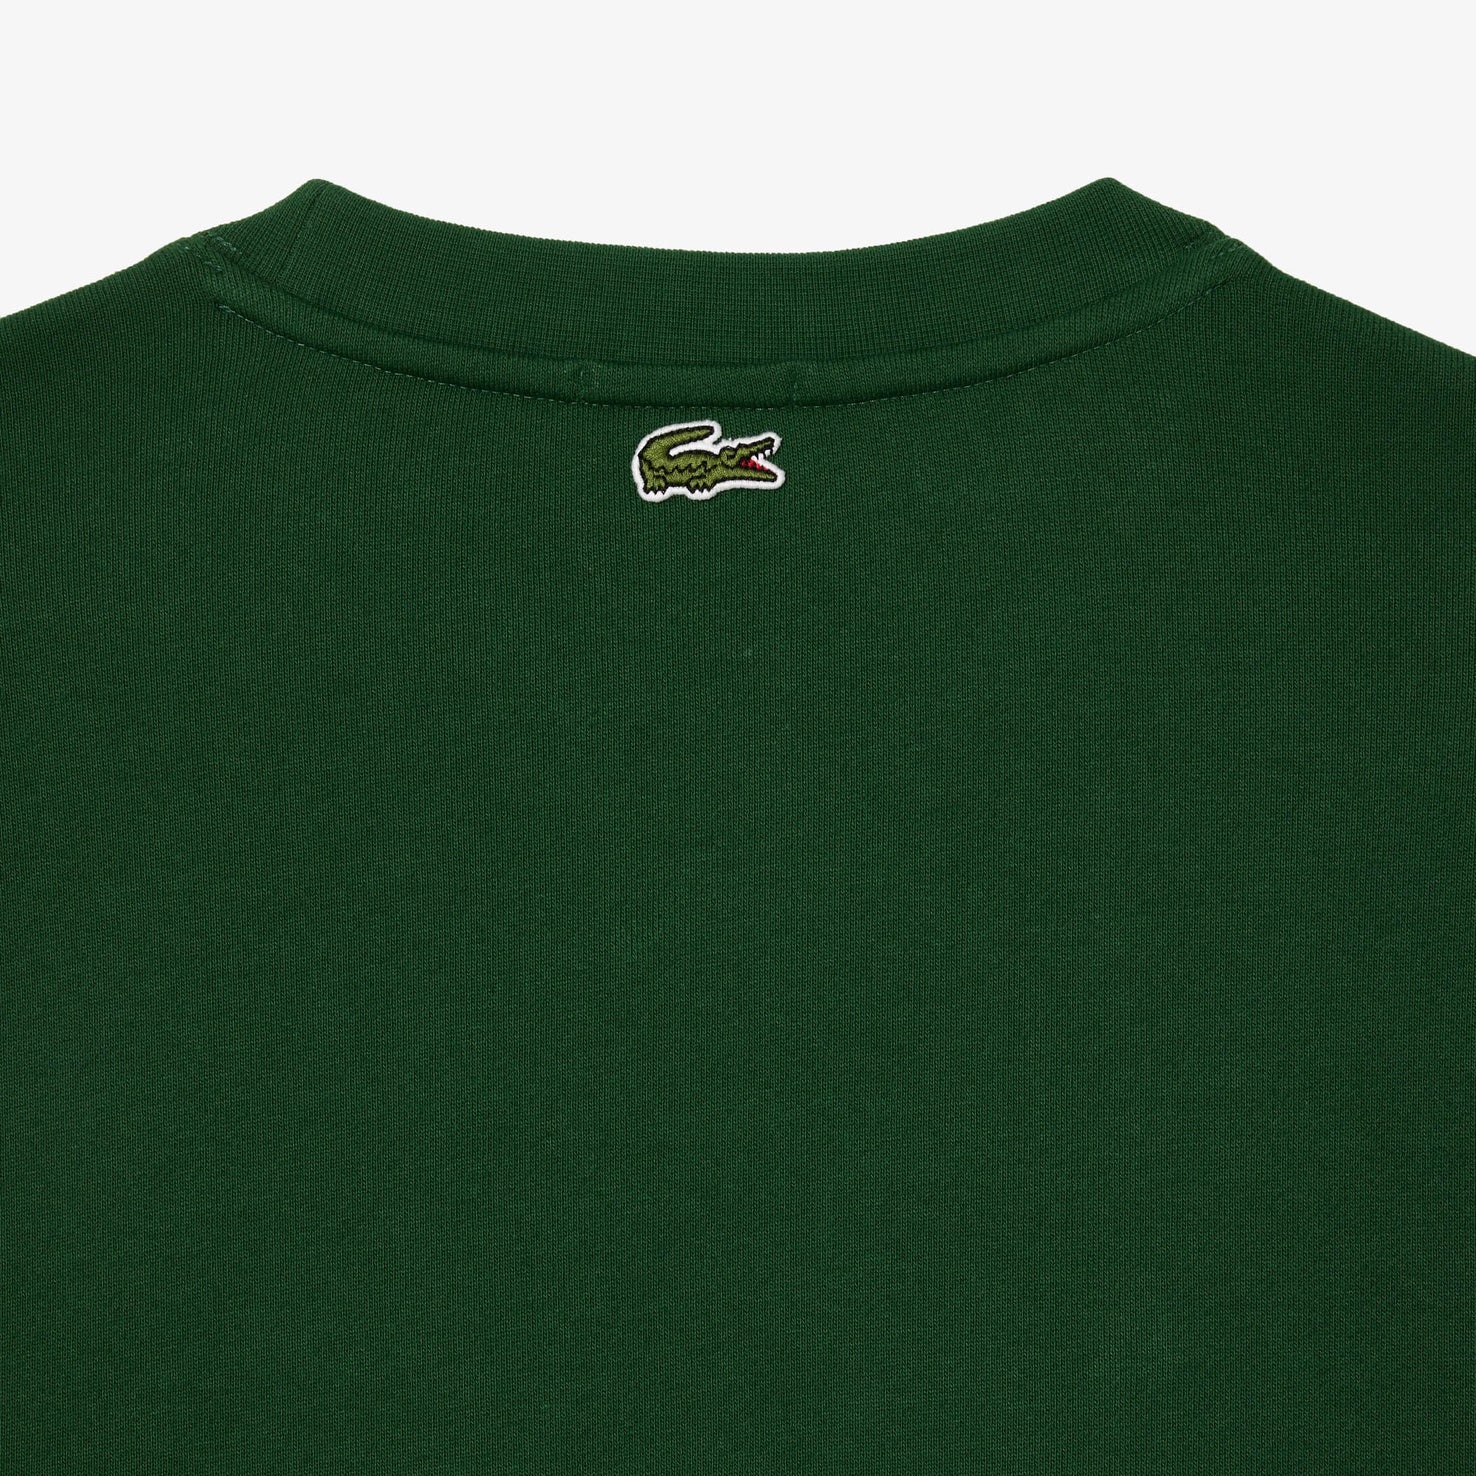 Lacoste Cotton Fleece Branded Sweatshirt Green SH1228 132